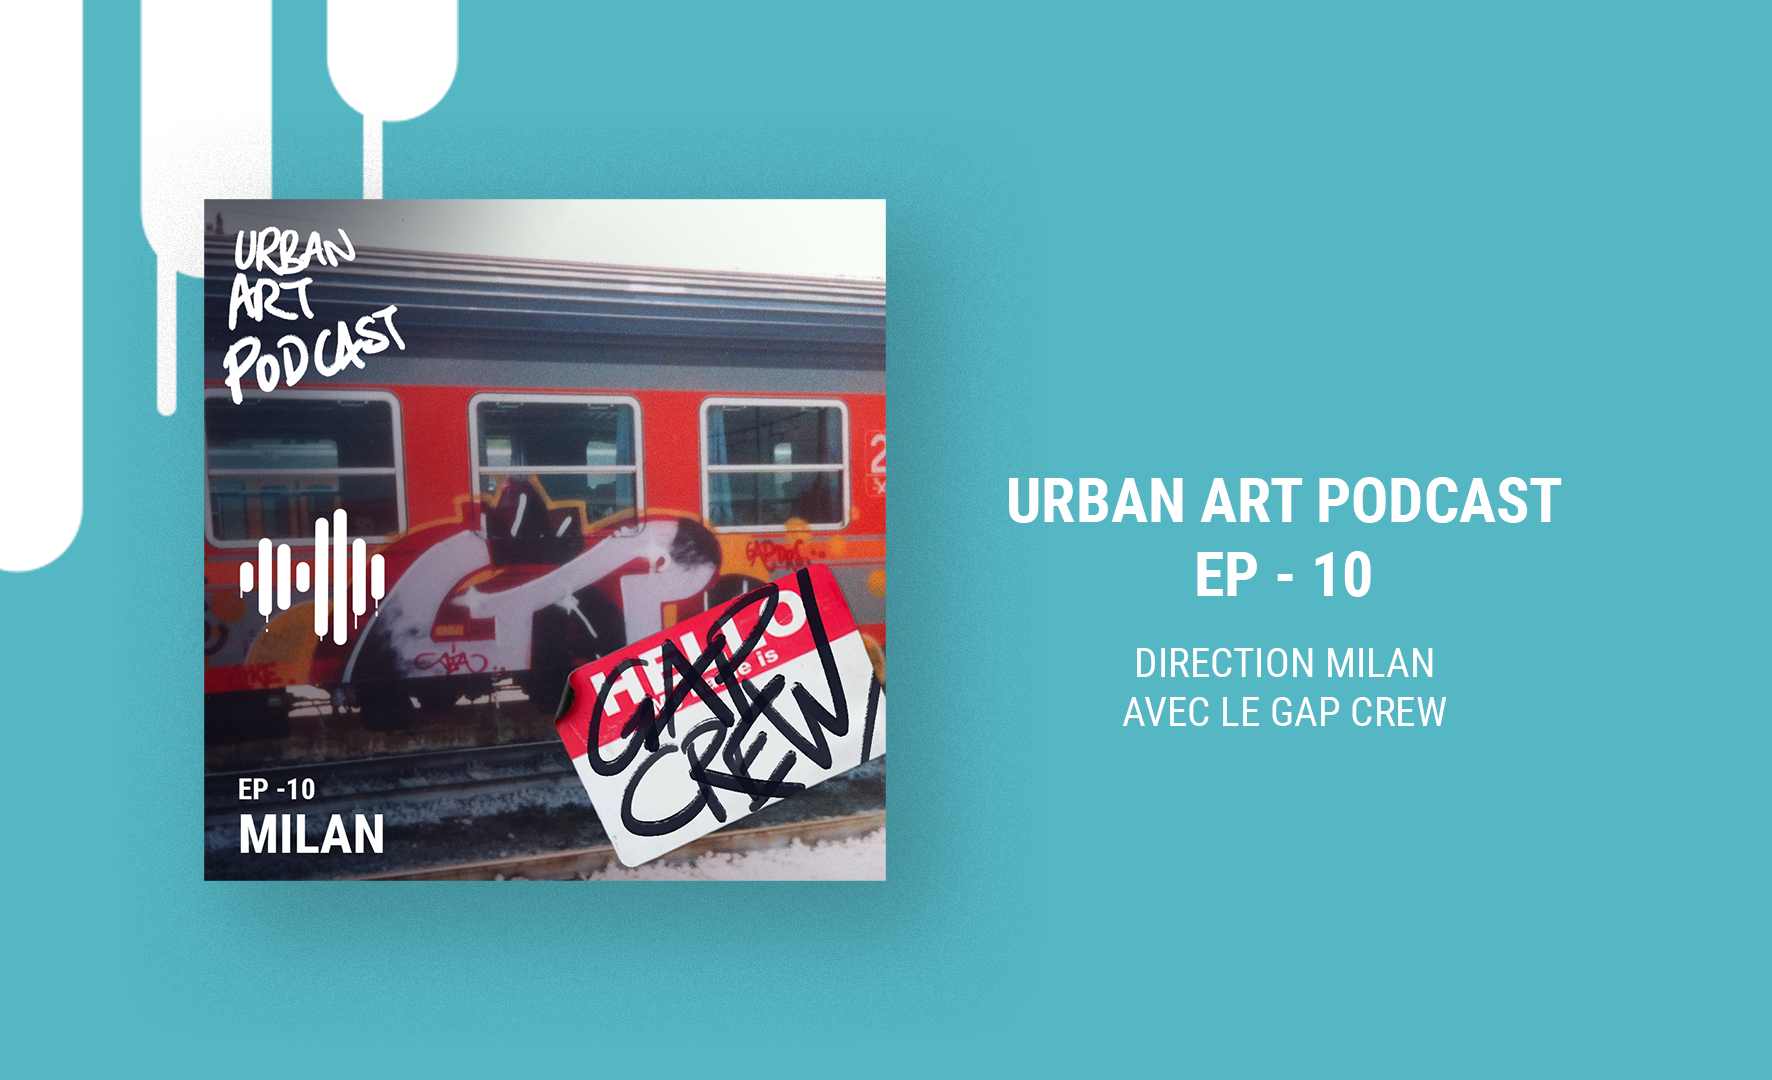 Urban Art Podcast c'est parti pour la saison 2 ! Urban Art Crew